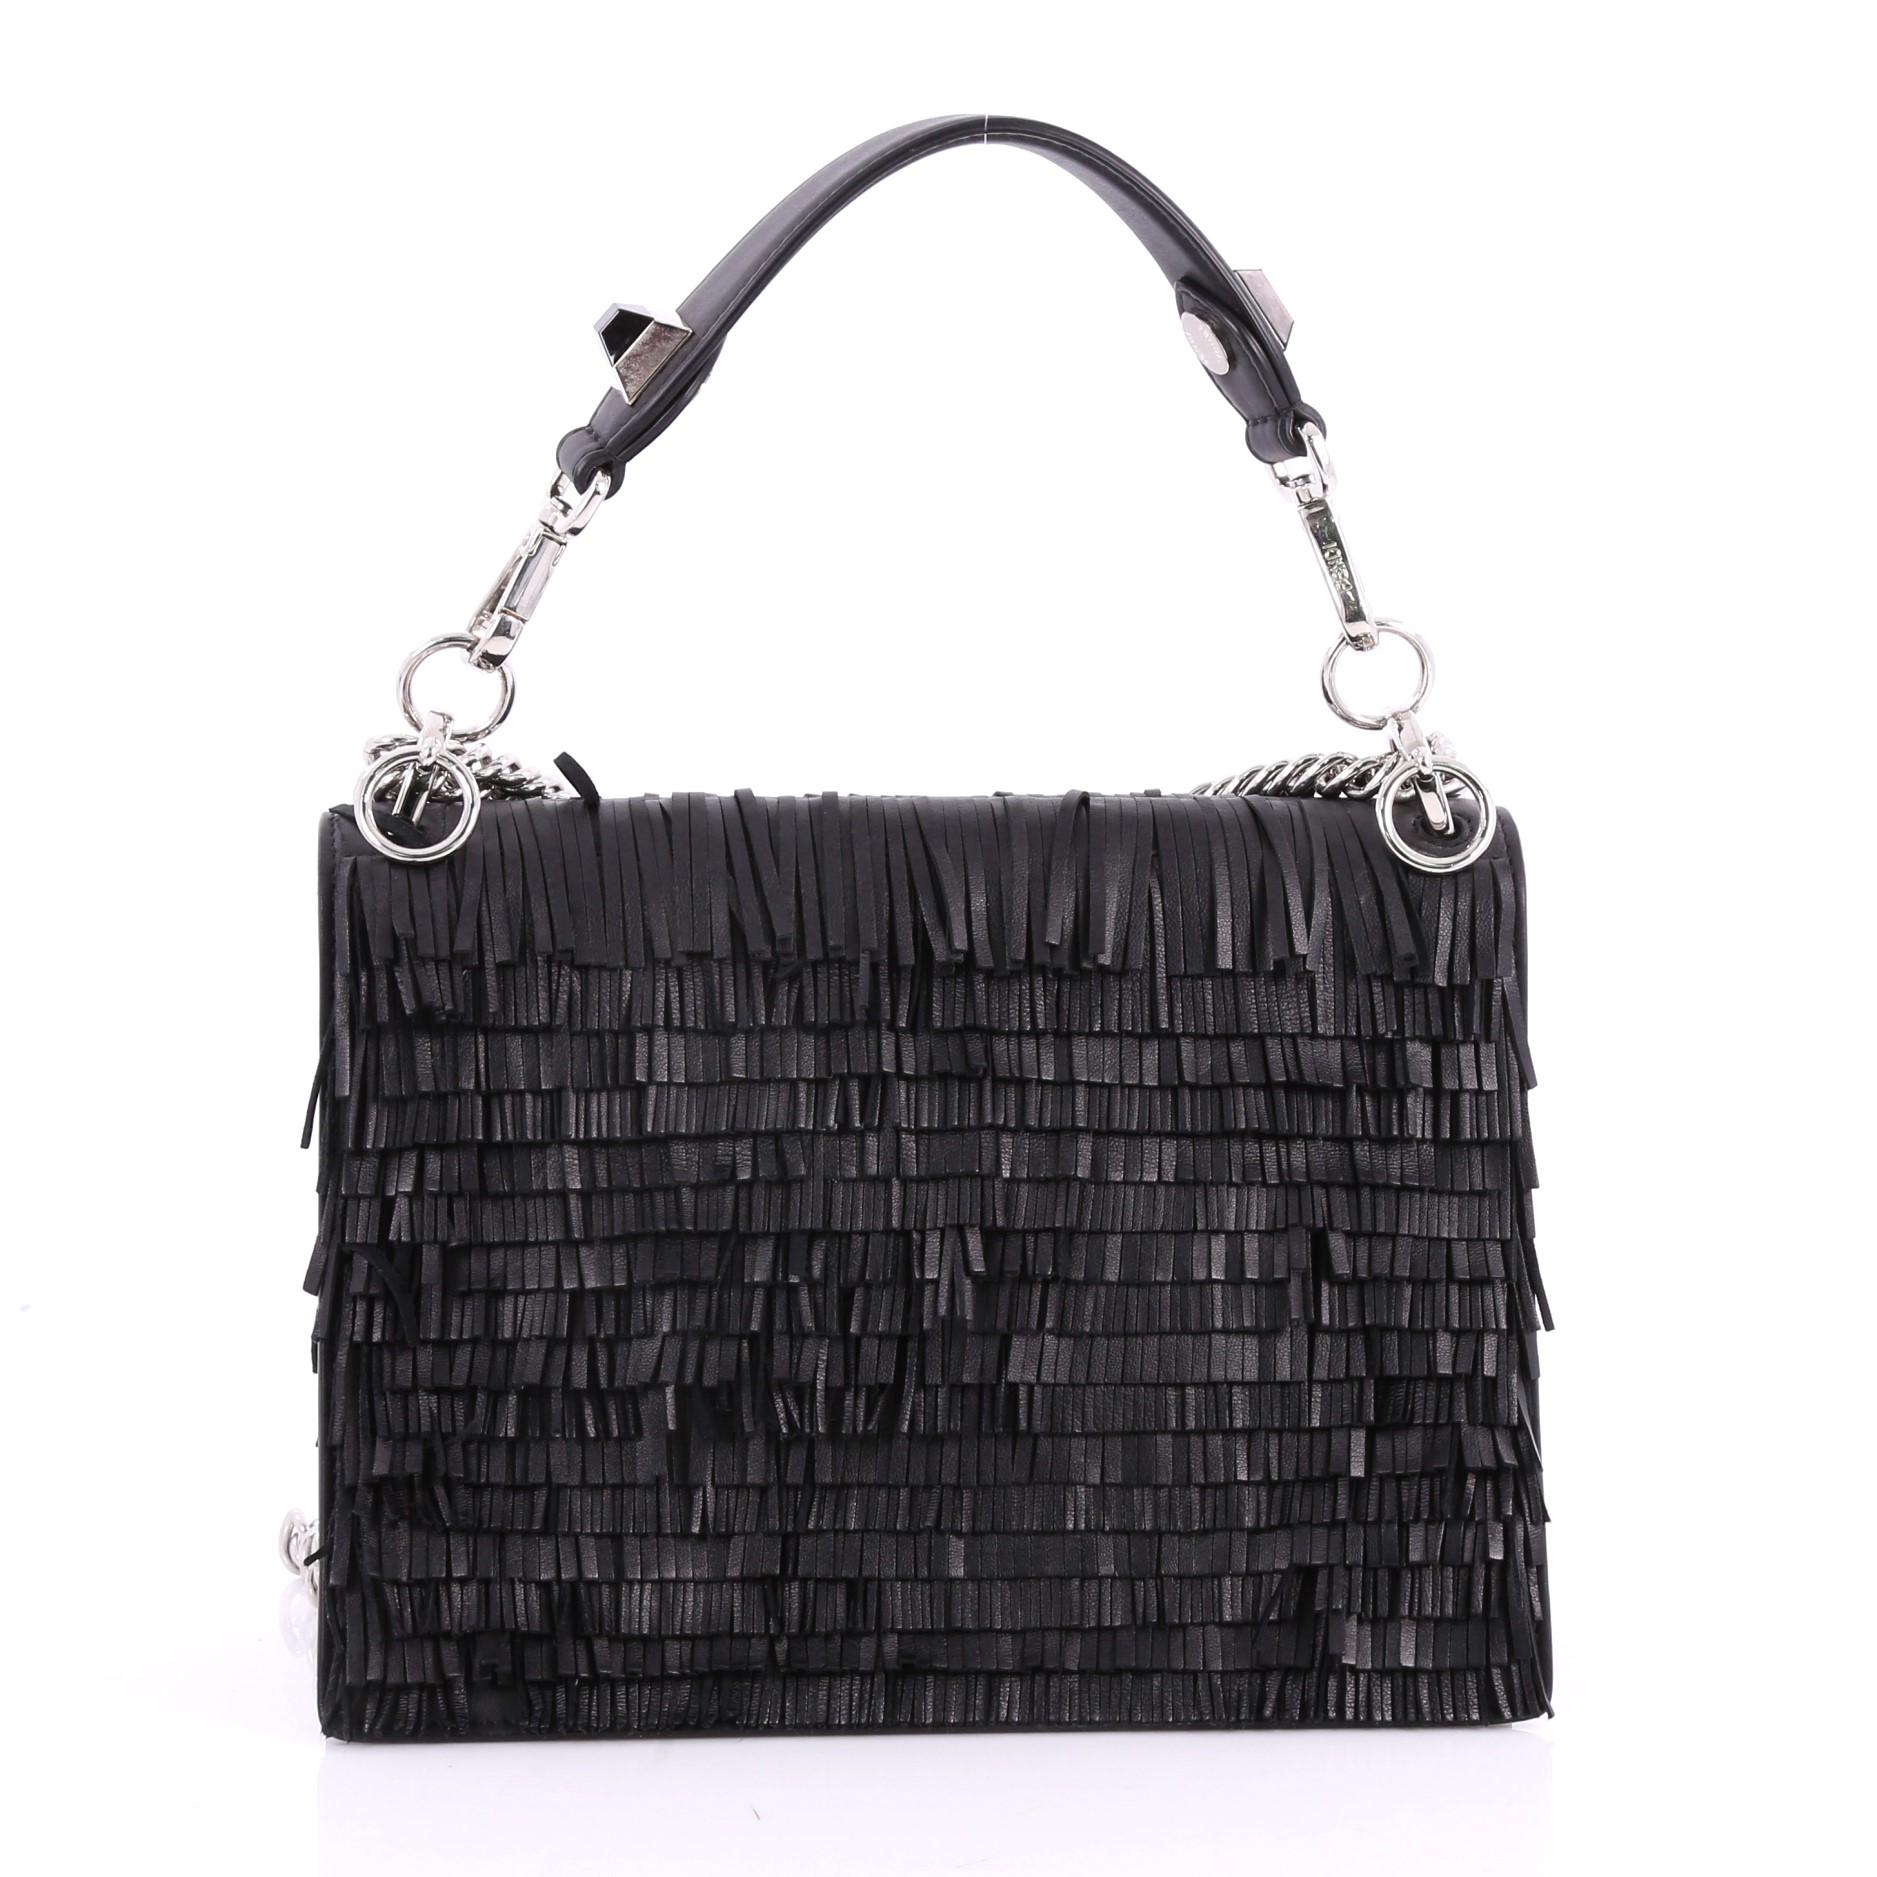 leather handbag with fringe